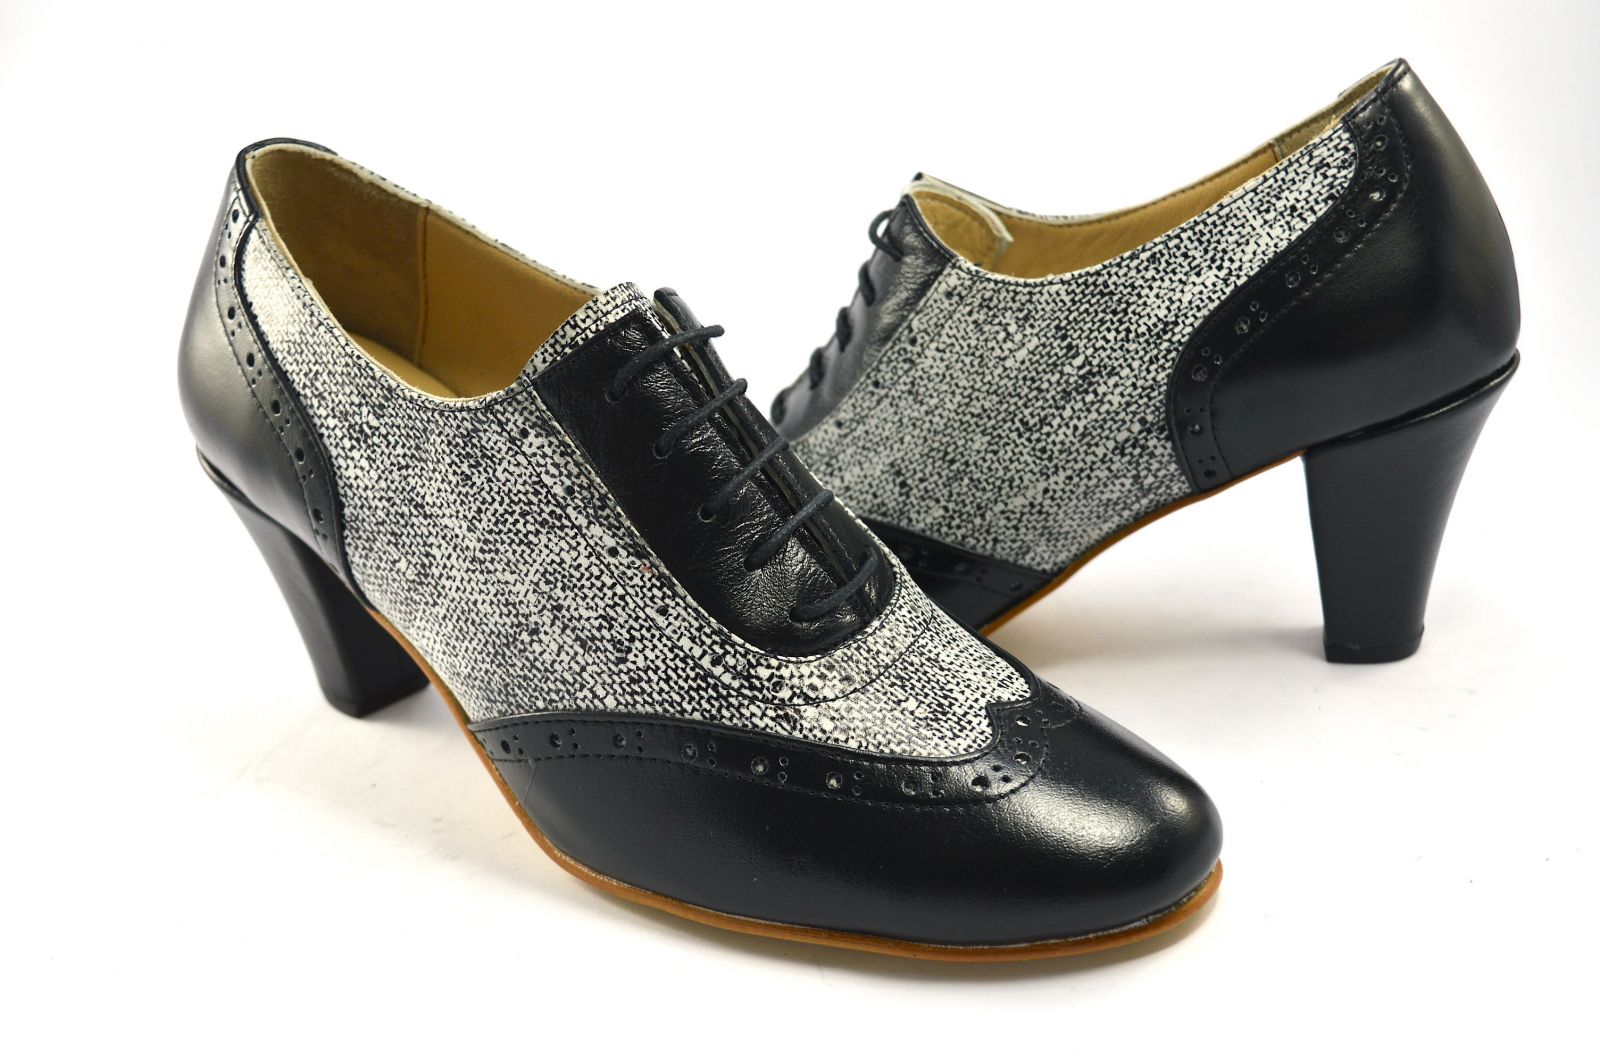 Γυναικείο παπούτσι tango κλειστού τύπου από μαλακό μαύρο δέρμα